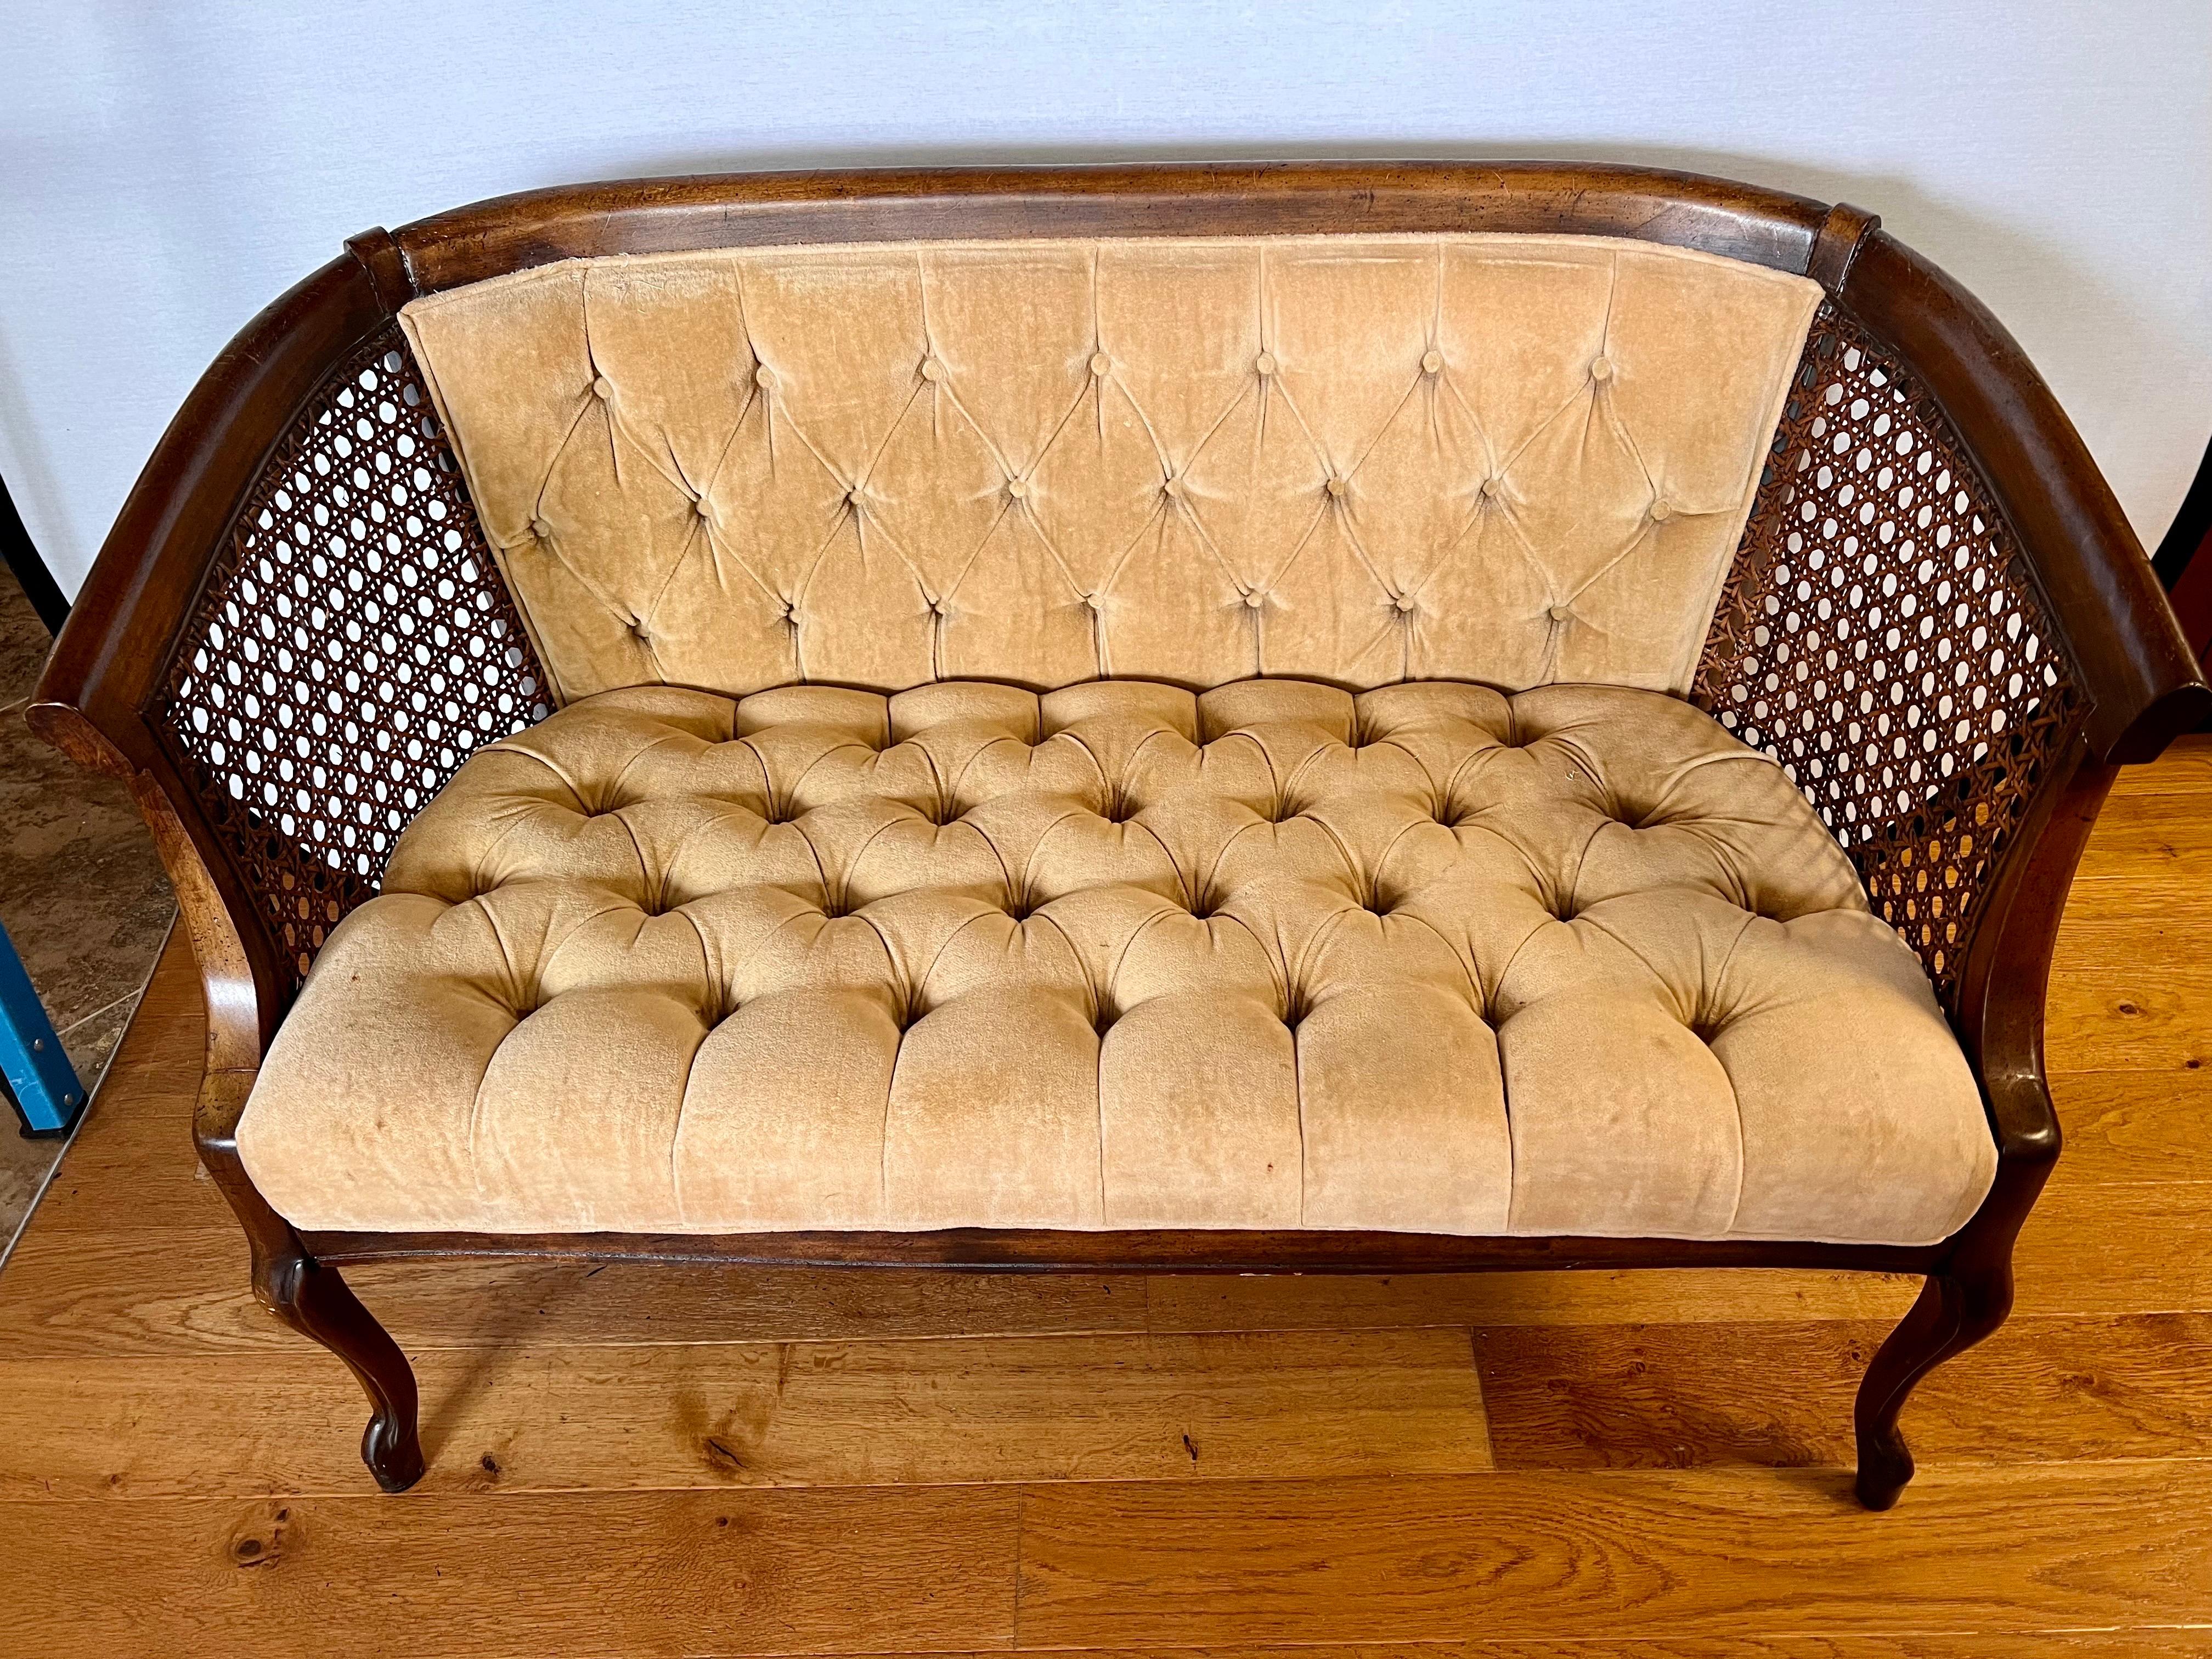 Dieses Sofa kombiniert die klassische Schönheit der gekrümmten Seiten mit einem getufteten goldenen Samtbezug.  Die filigranen Rohrleitungen, die perfekt sind, verleihen ihm einen Hauch von Eleganz.  Der Stoff ist original und hat ein paar Risse,